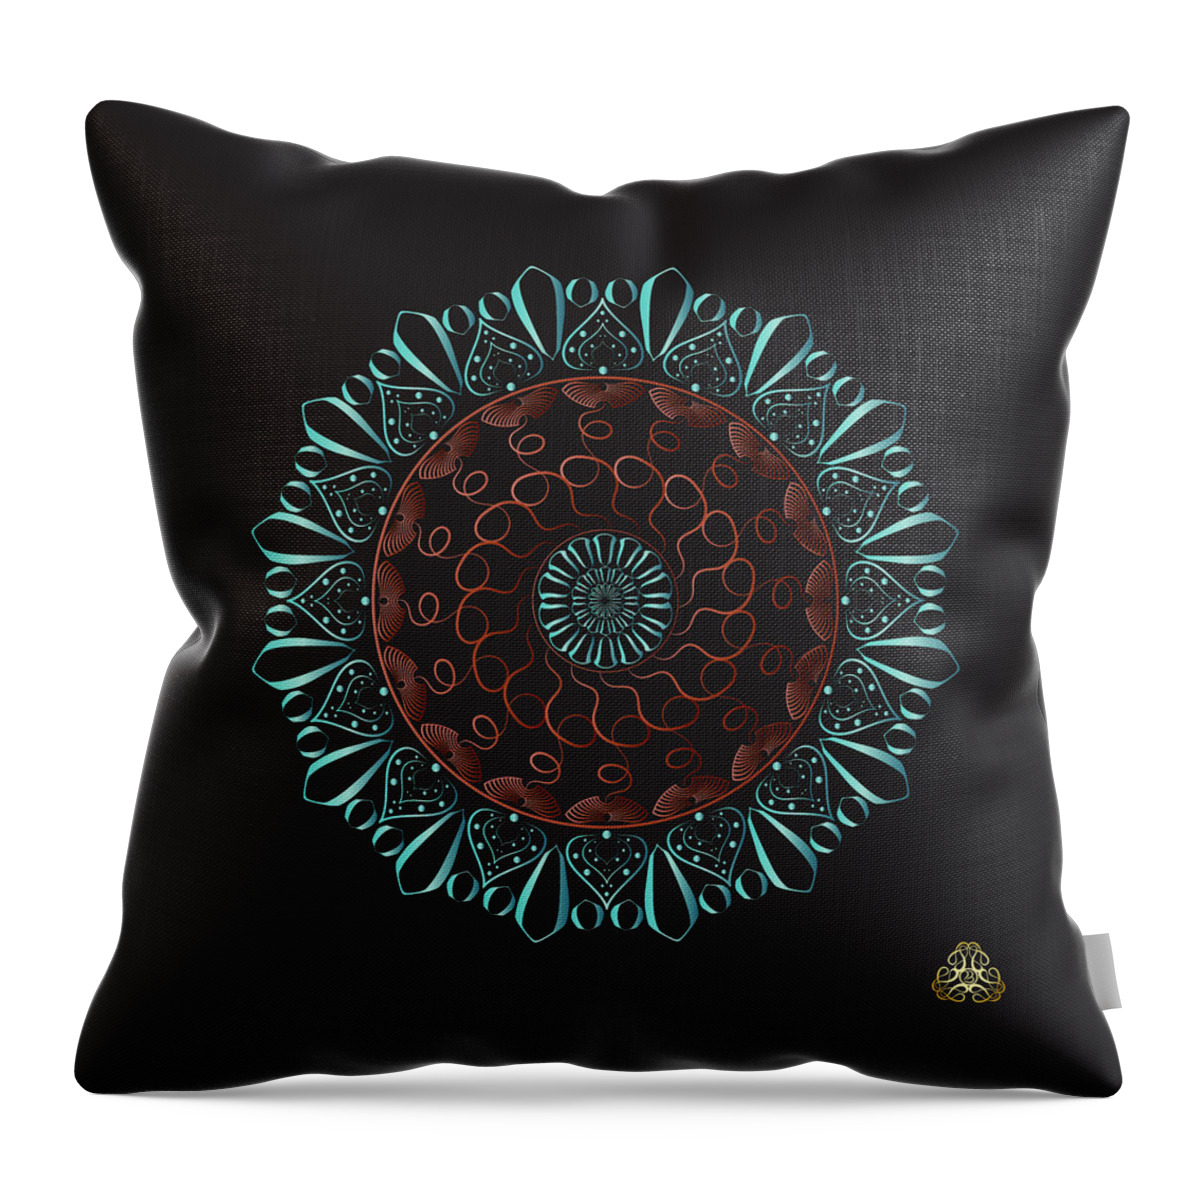 Mandala Throw Pillow featuring the digital art Kuklos No 4326 by Alan Bennington